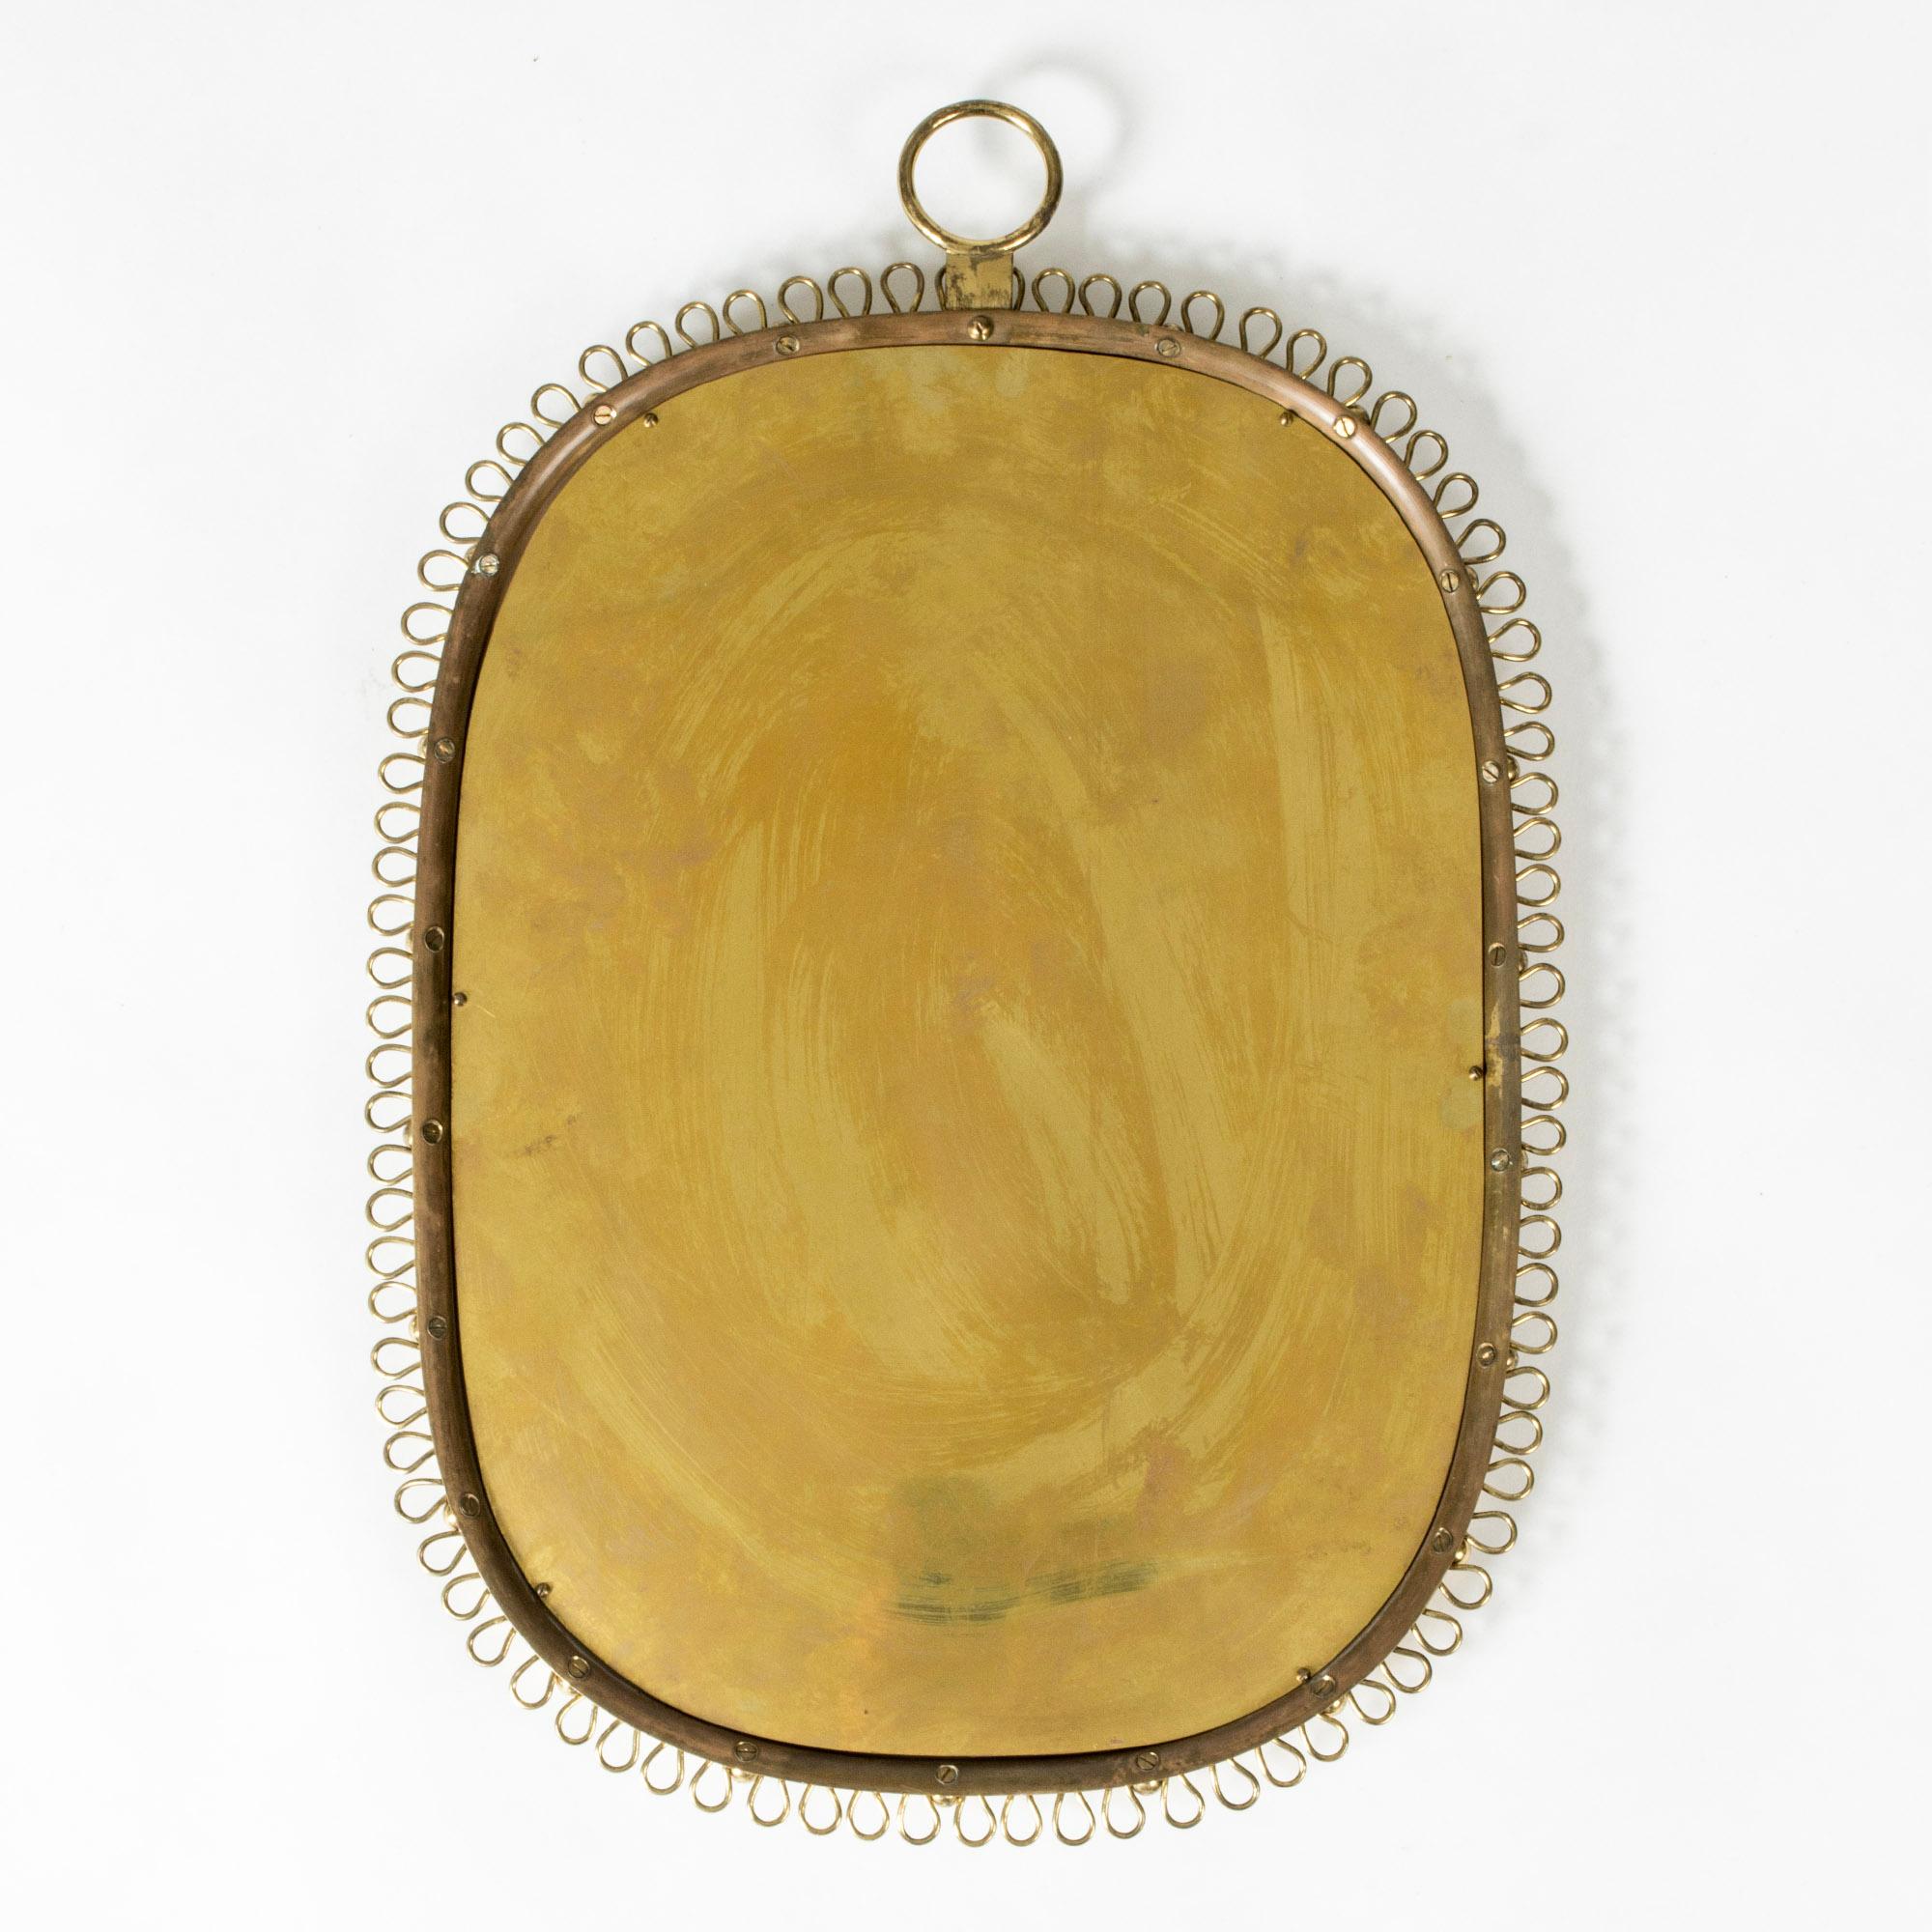 Scandinavian Modern Brass Wall Mirror, Josef Frank, Svenskt Tenn, Sweden, 1950s For Sale 1